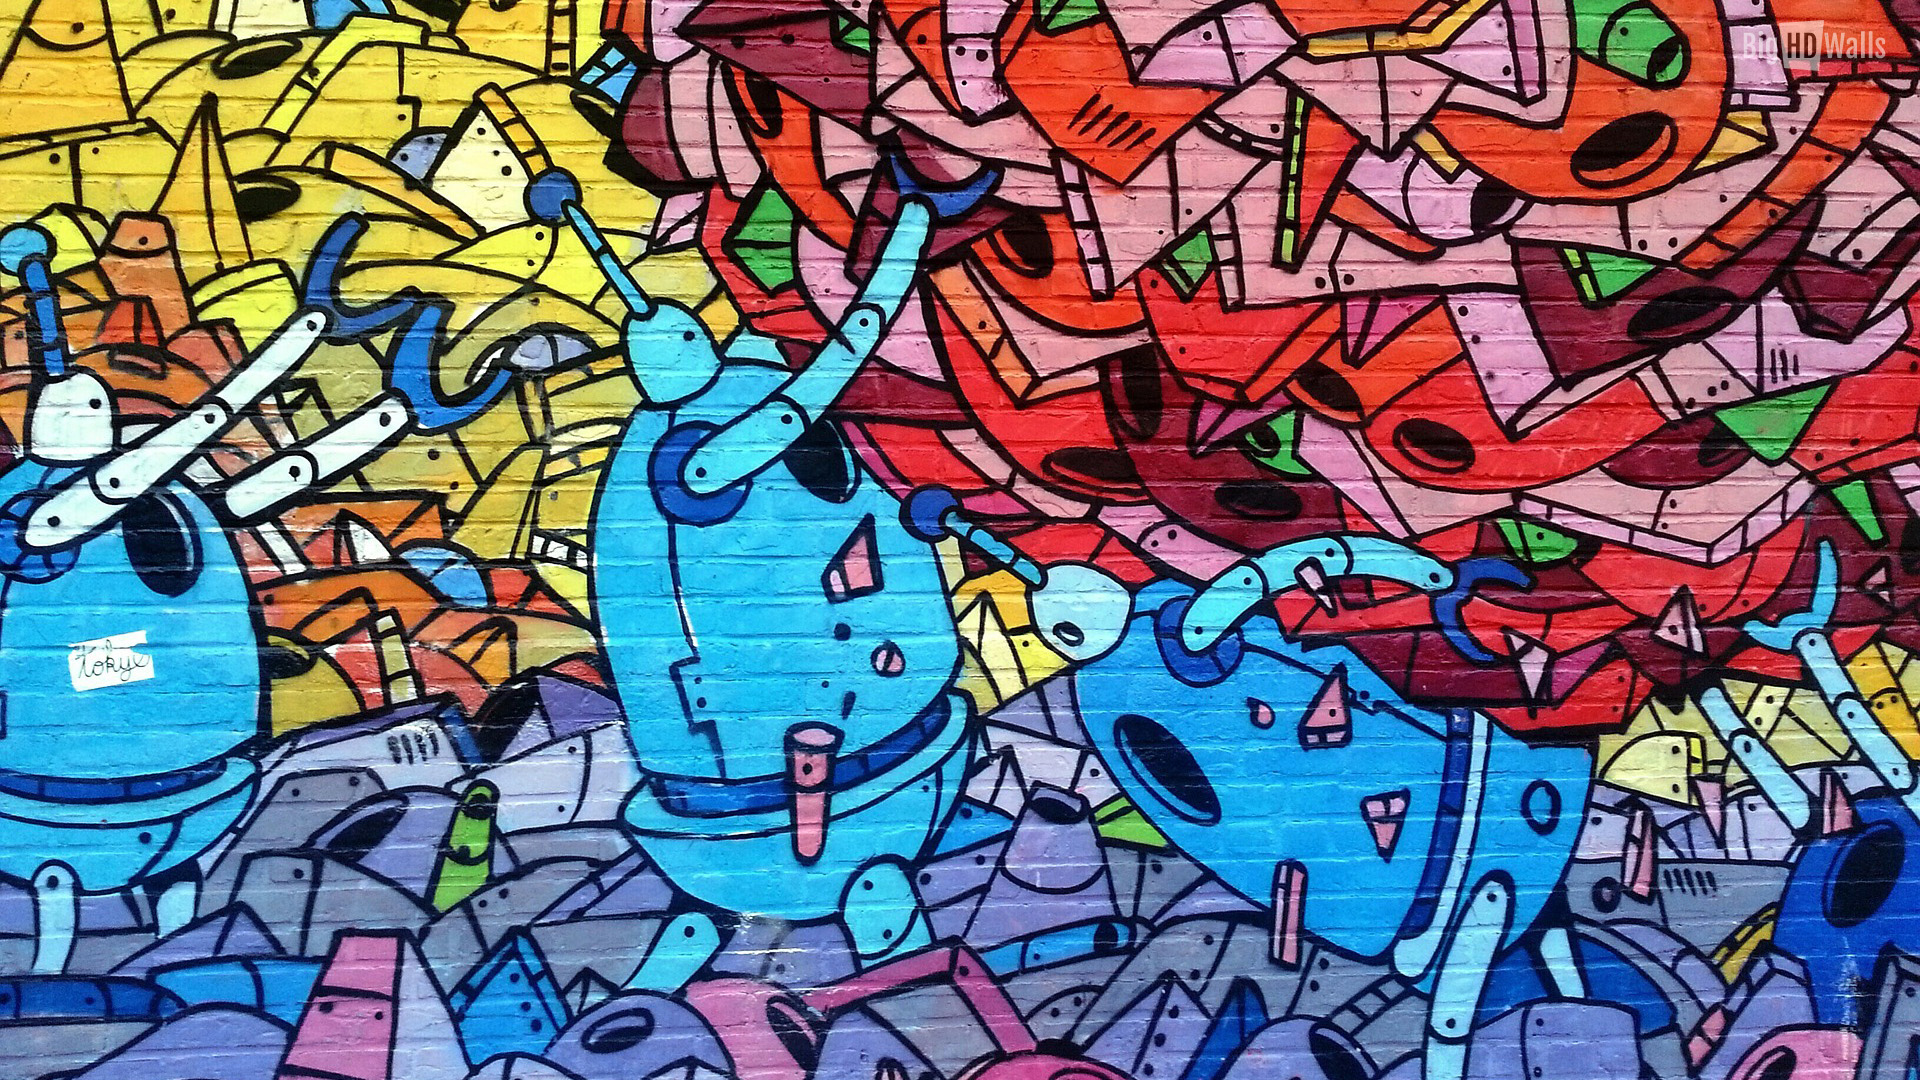 Street Art Graffiti Wallpaper BigHDwalls